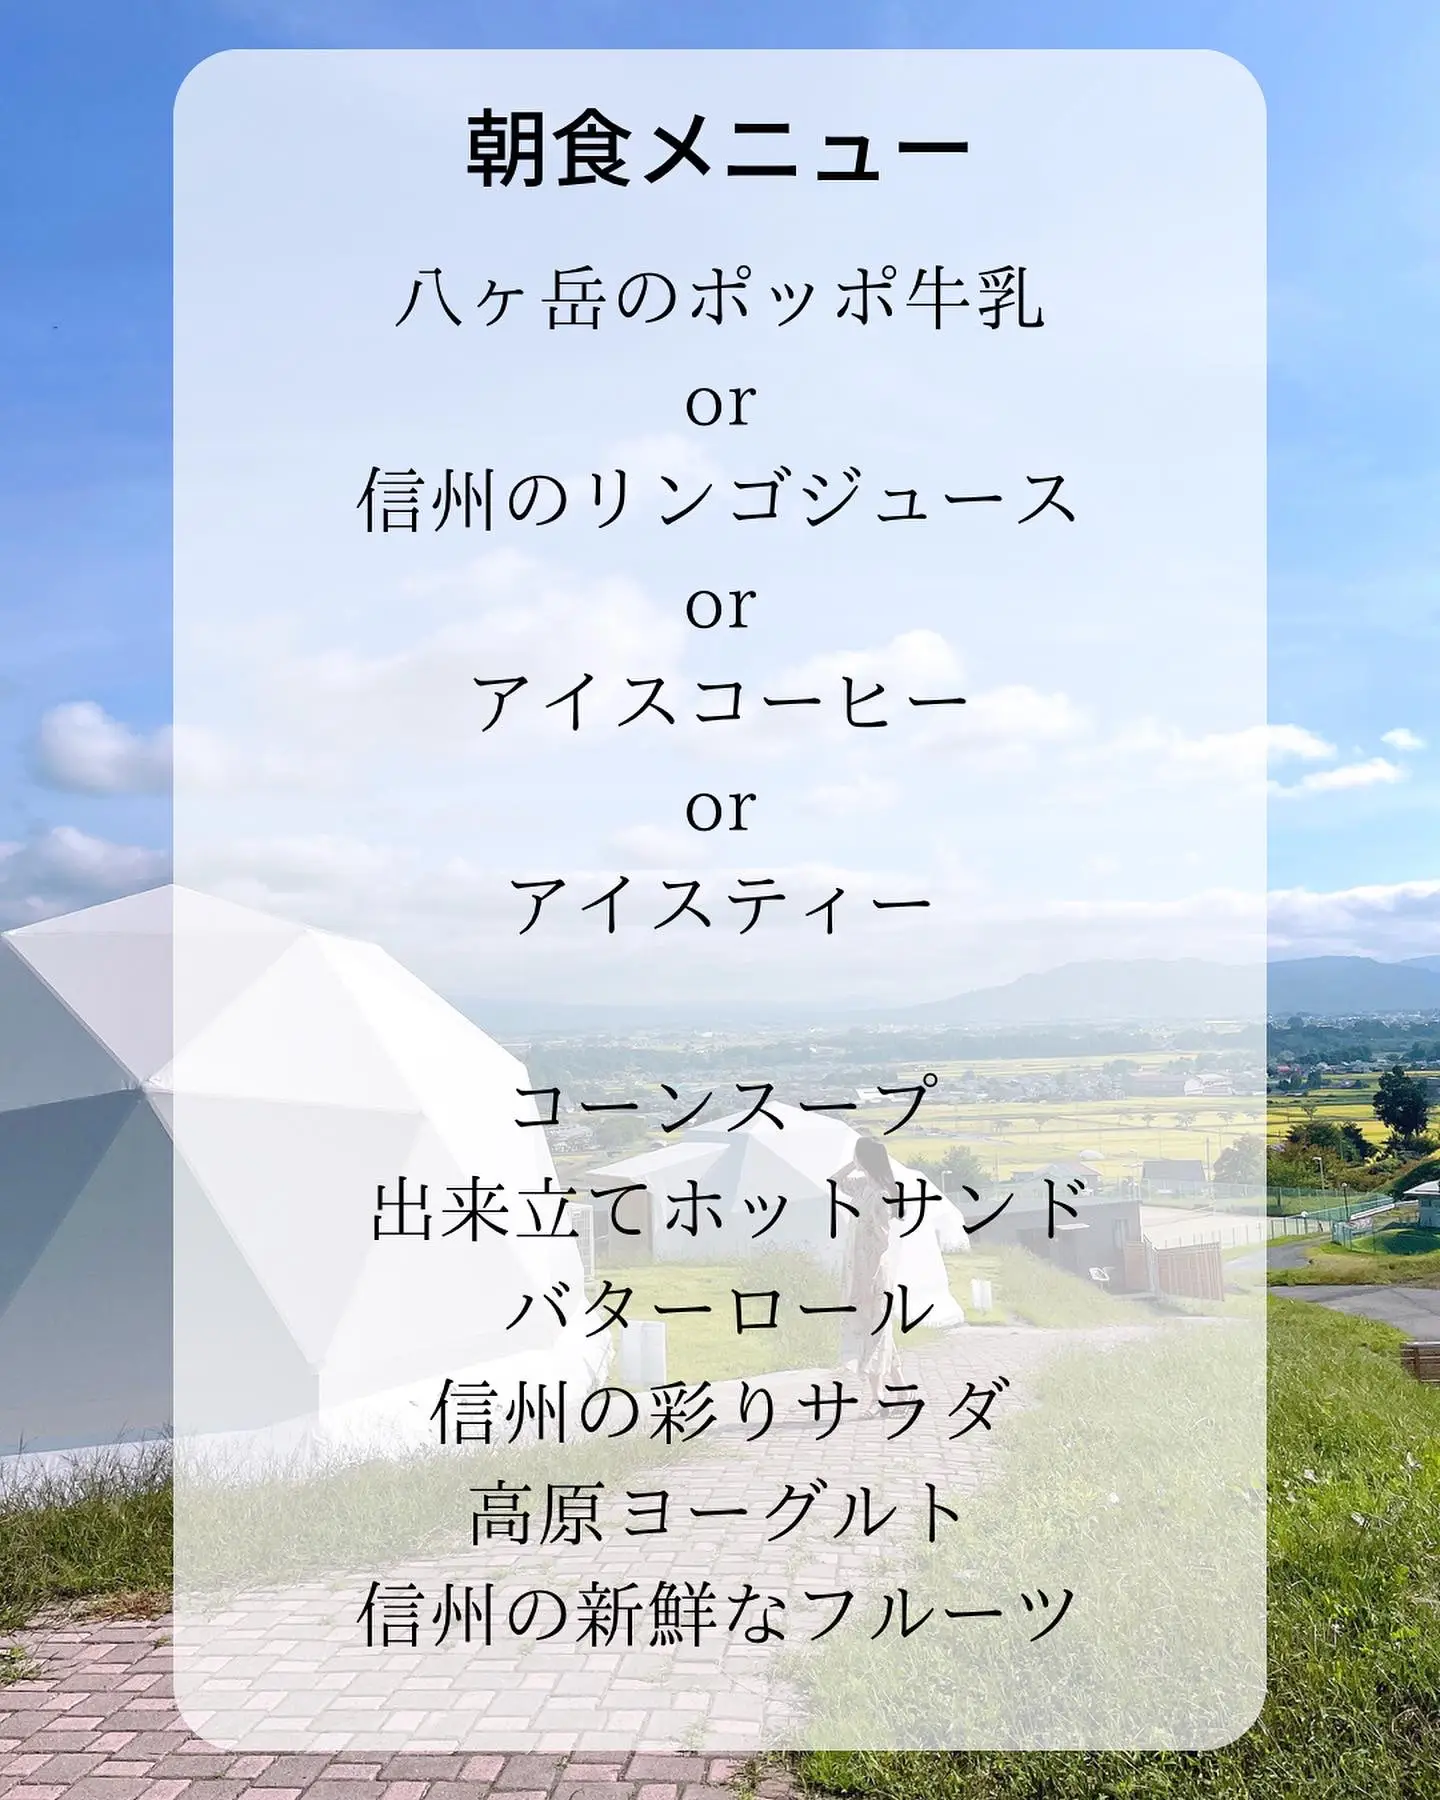 【長野】絶景×温泉が楽しめるグランピングの画像 (7枚目)